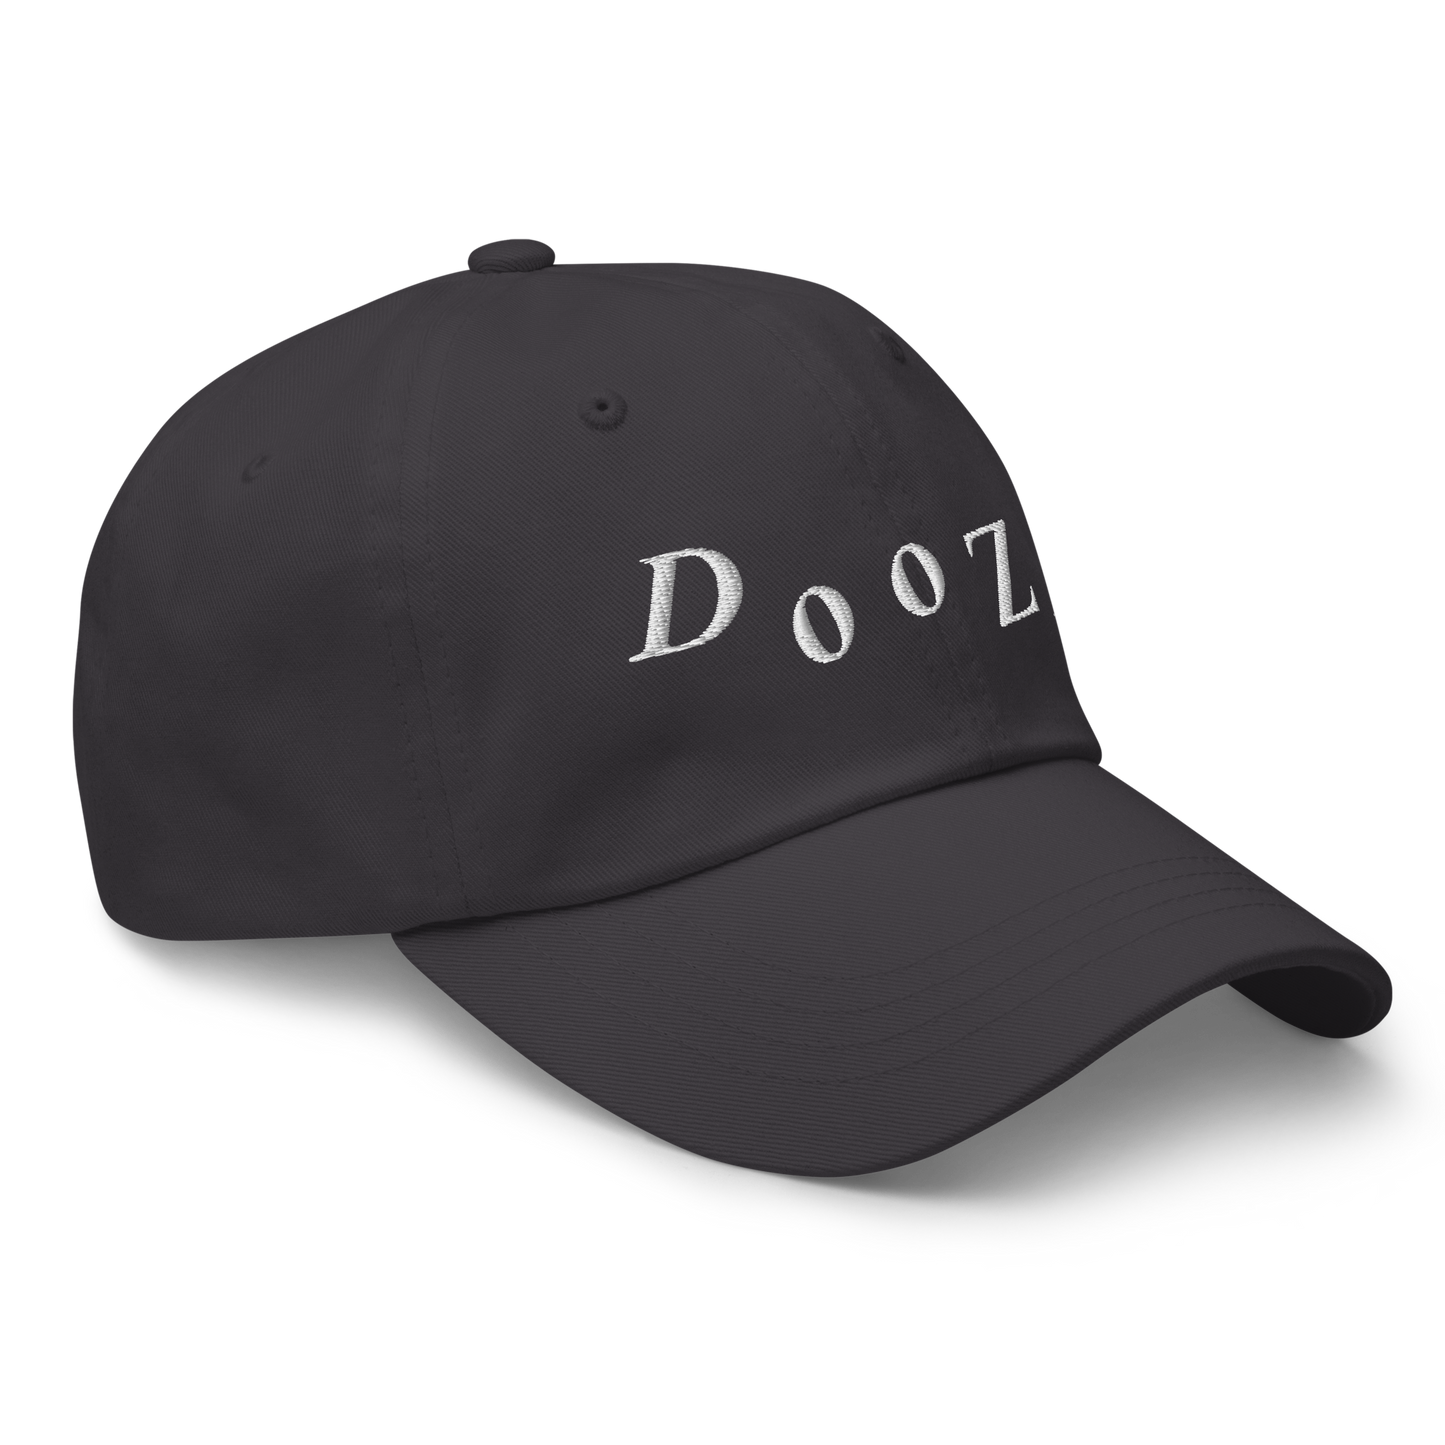 Doozy dad hat